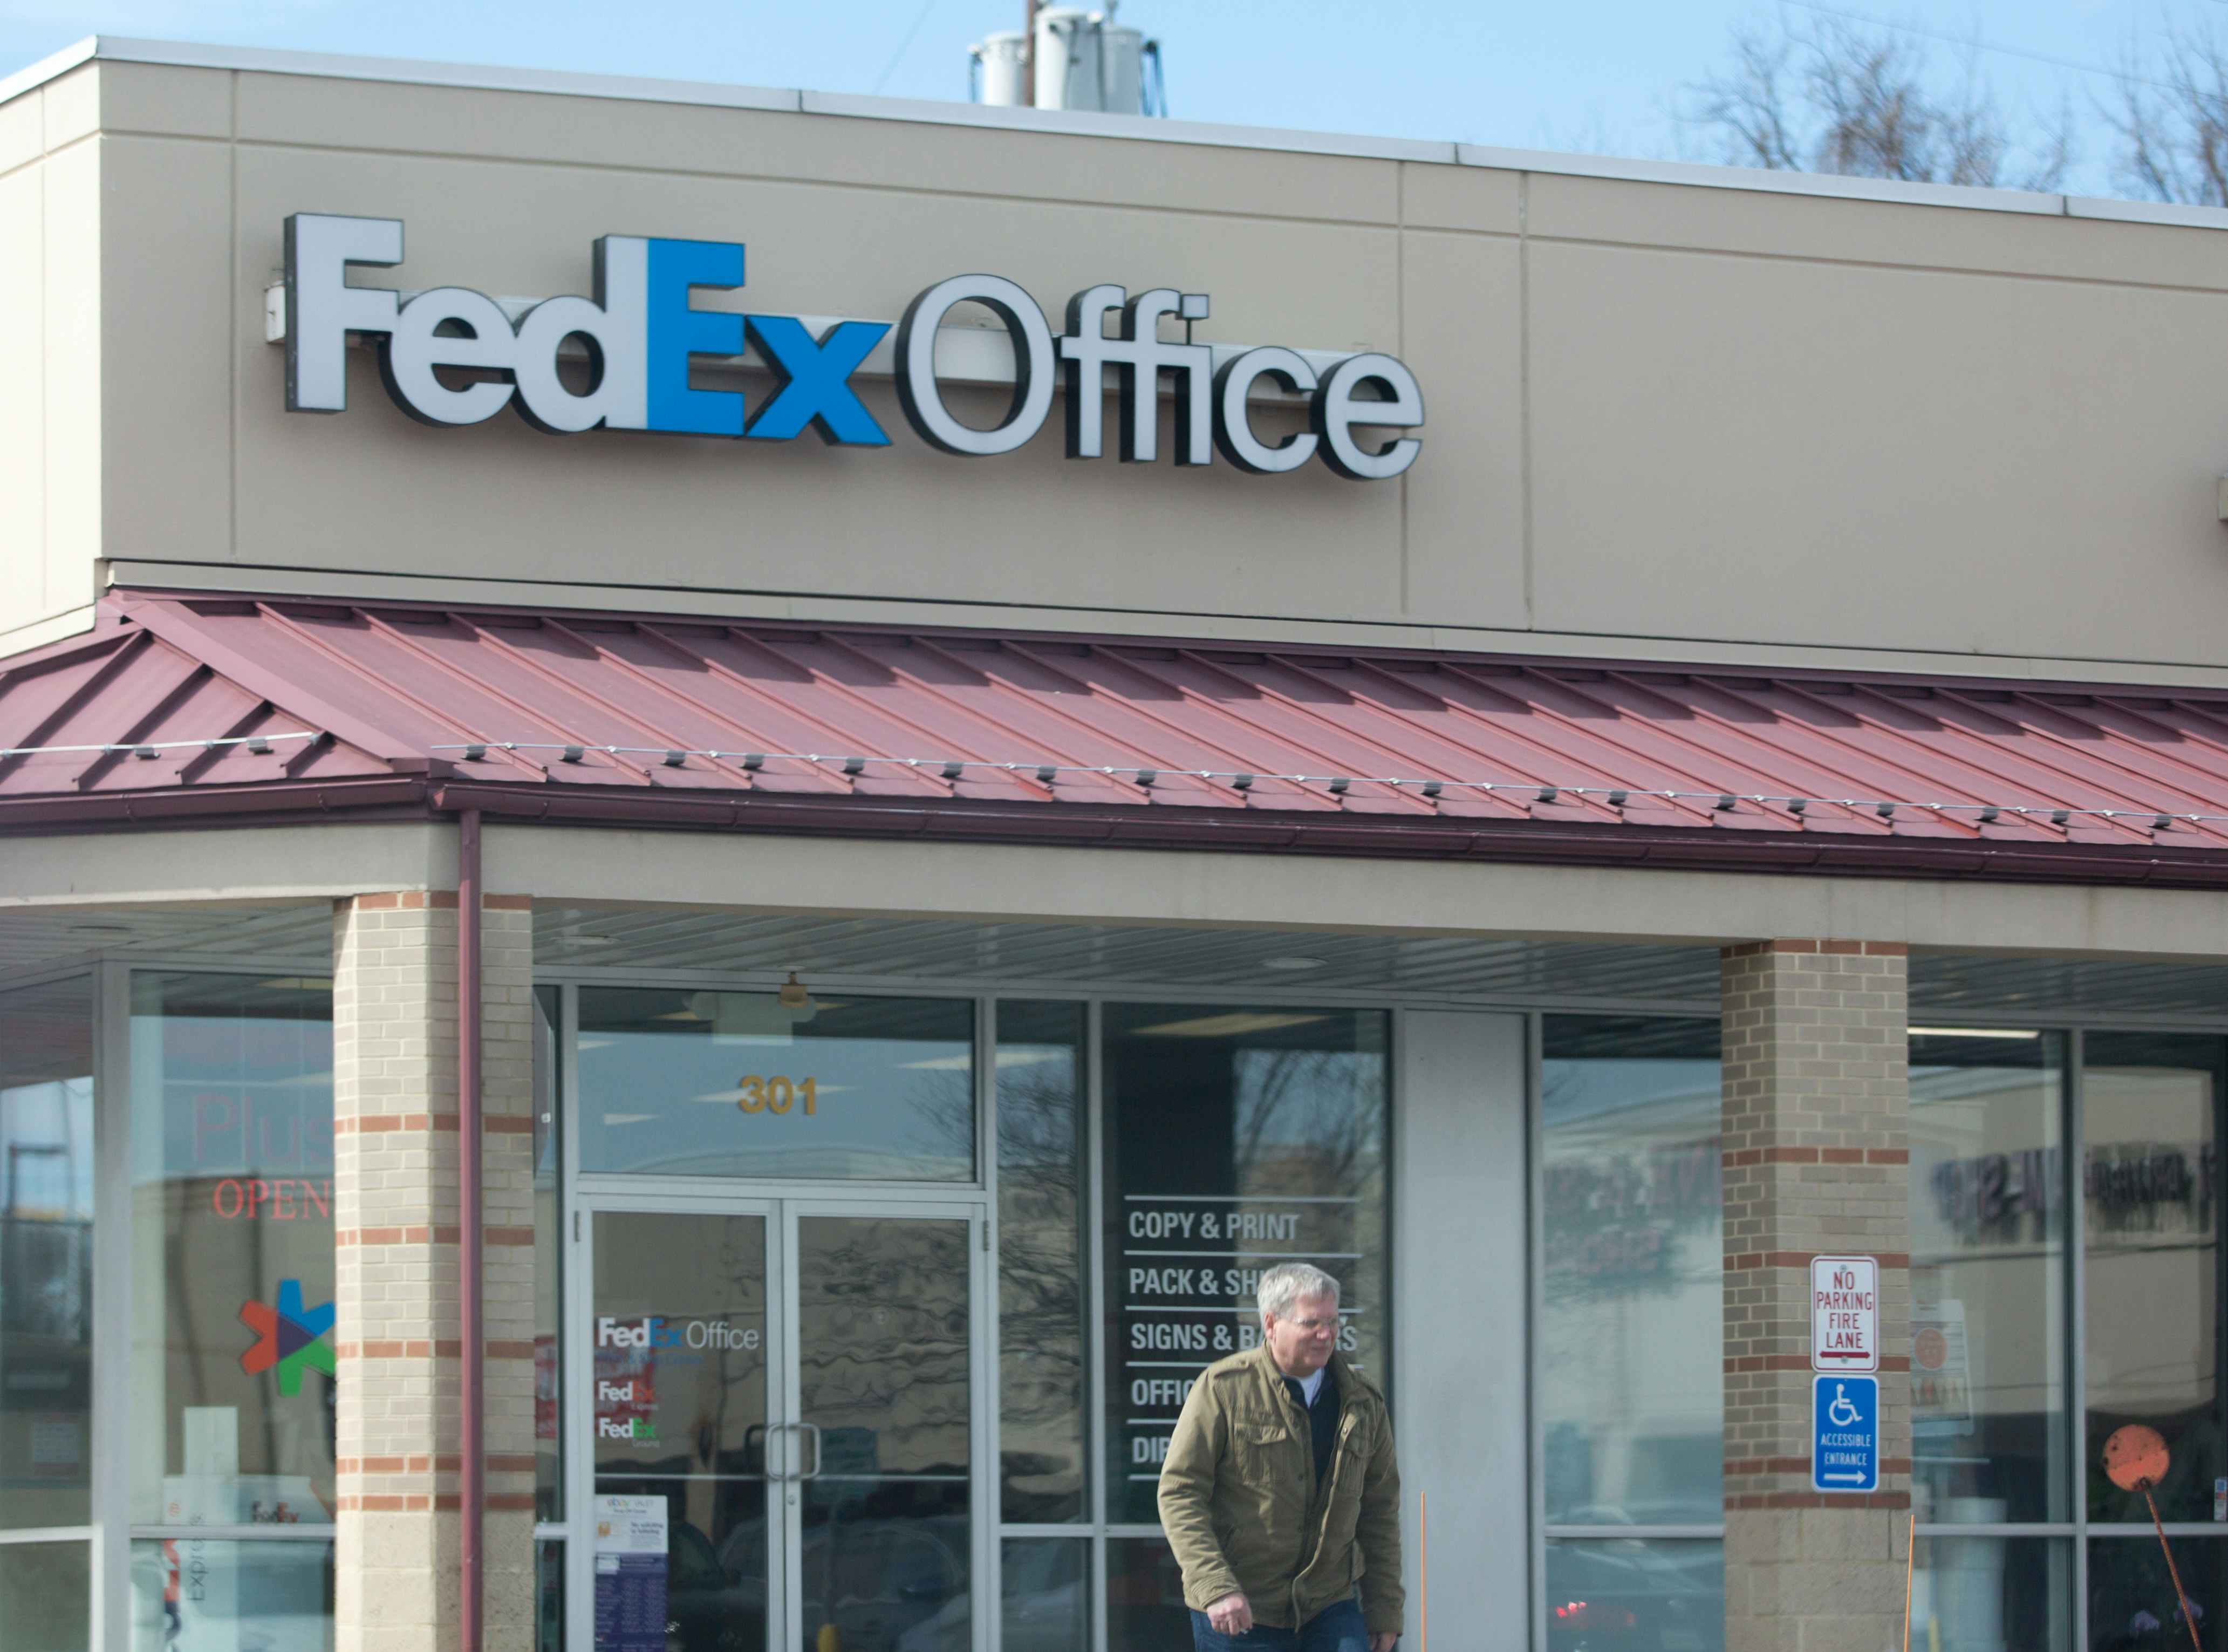 A man exiting a FedEx store.